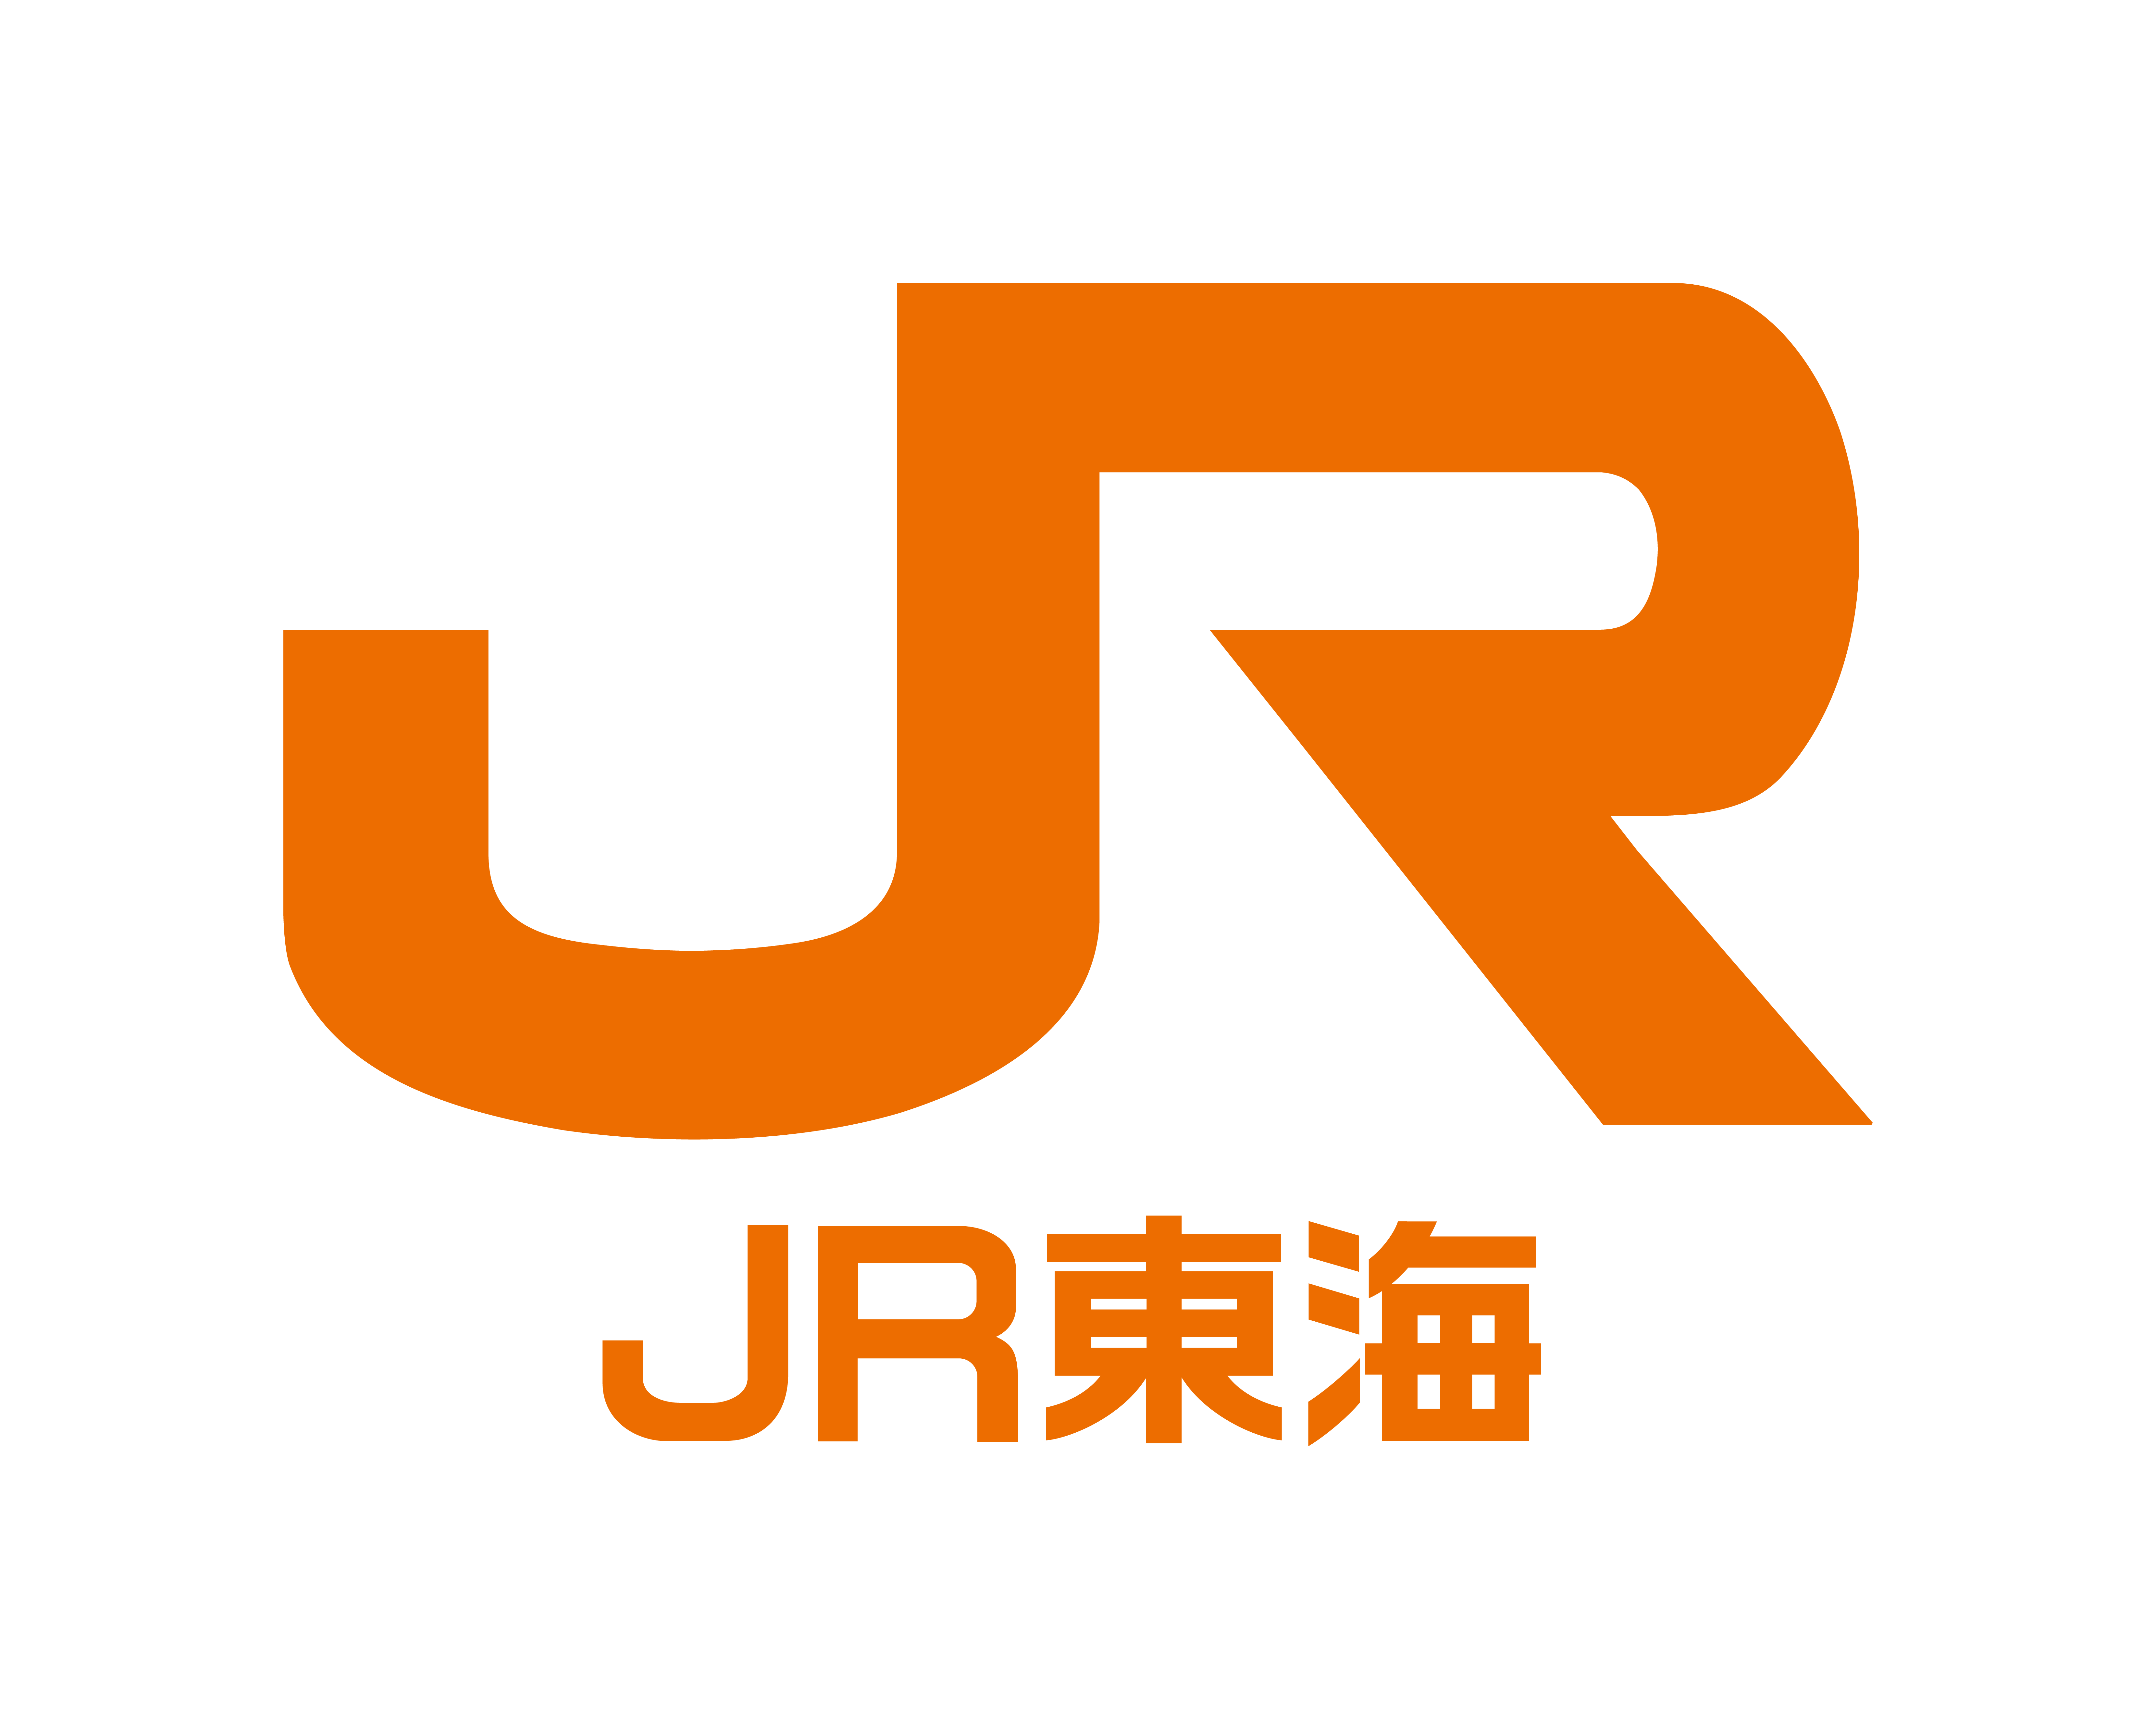 058 – JR Central